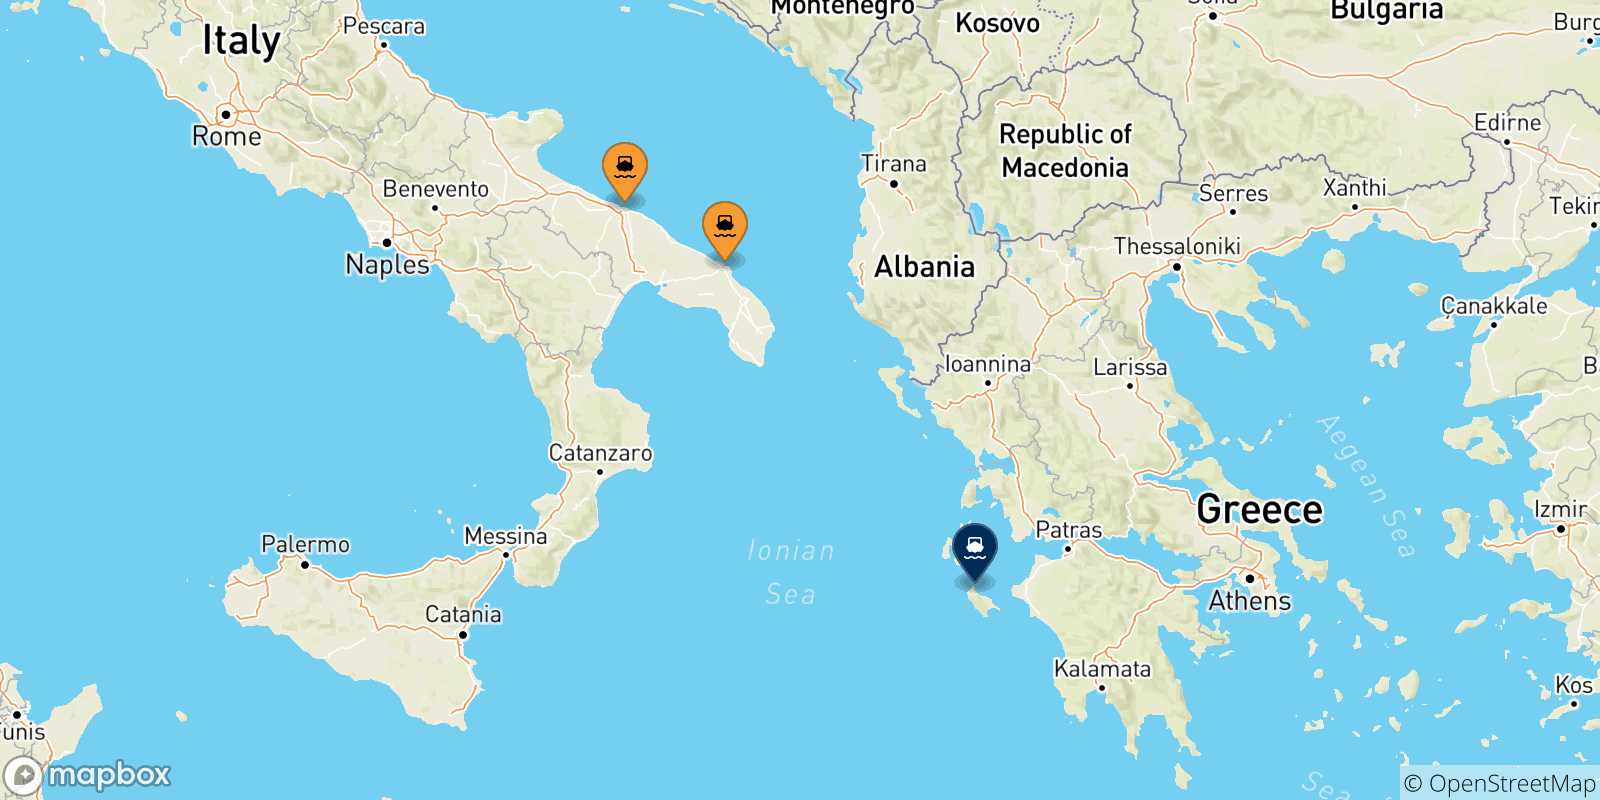 Mappa delle possibili rotte tra l'Italia e Zante